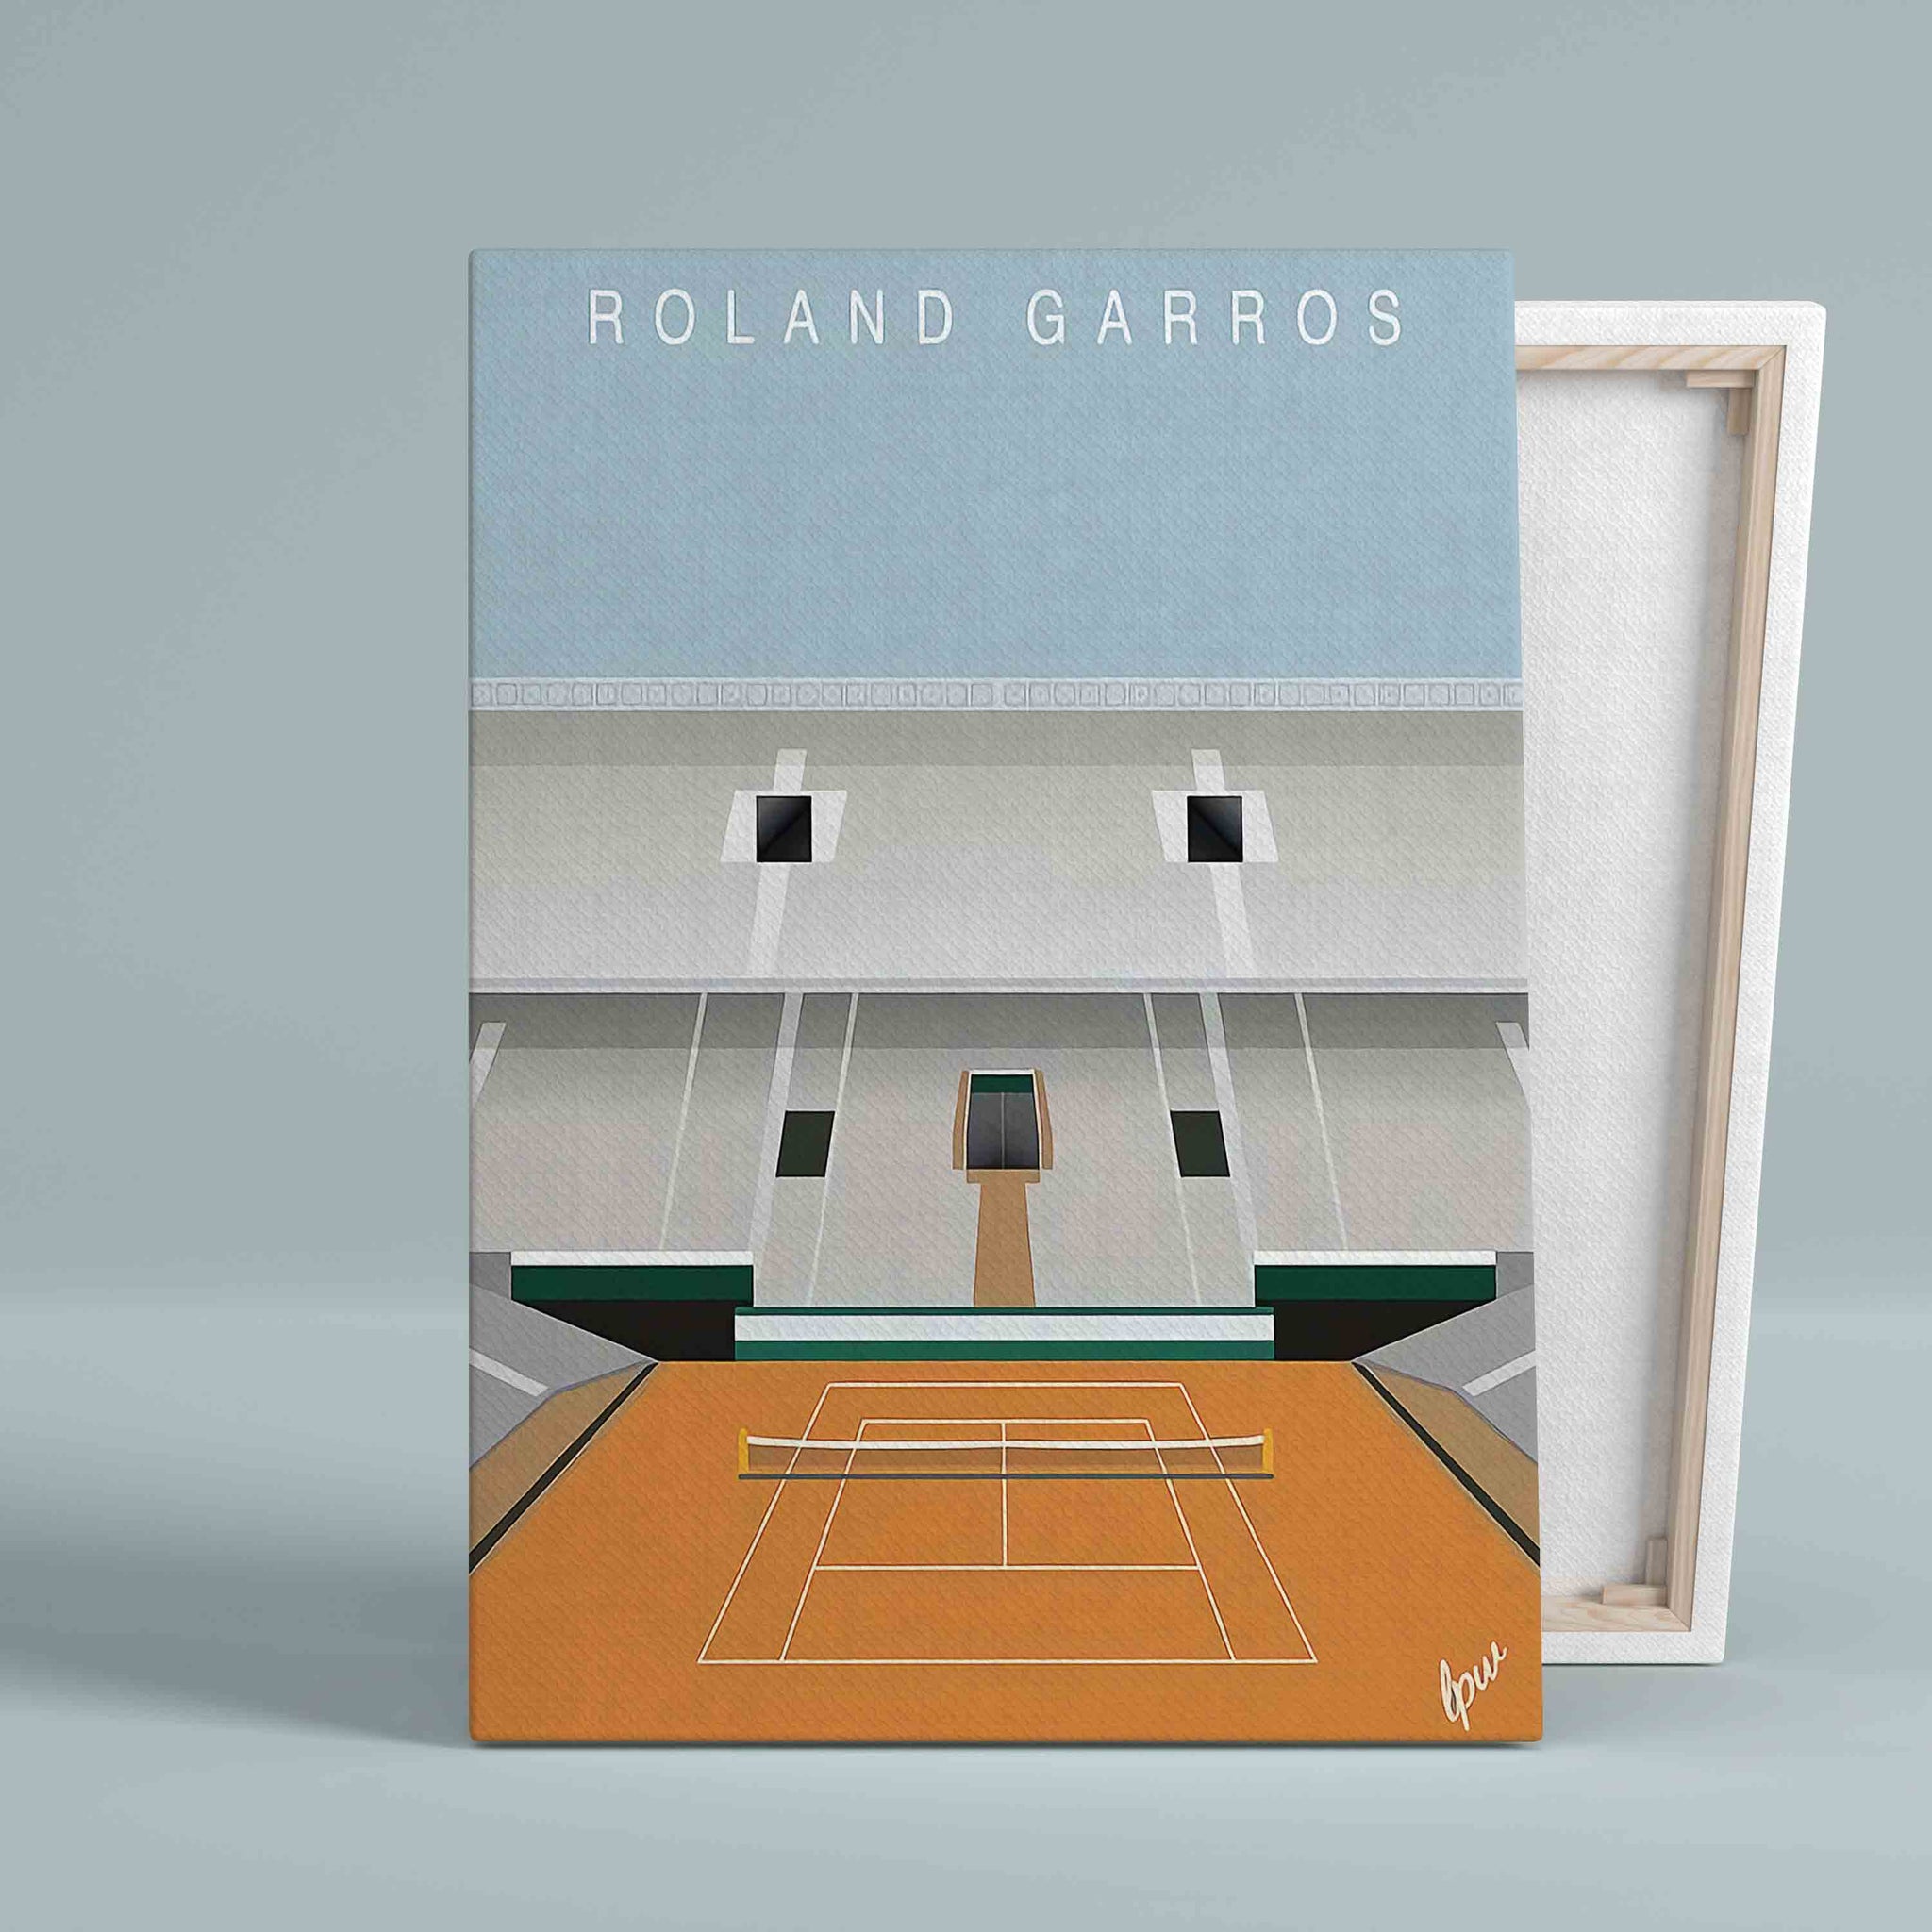 Roland Garros Stadium Canvas, Tennis Stadium Canvas, Canvas Wall Art, Canvas Prints, Gift Canvas